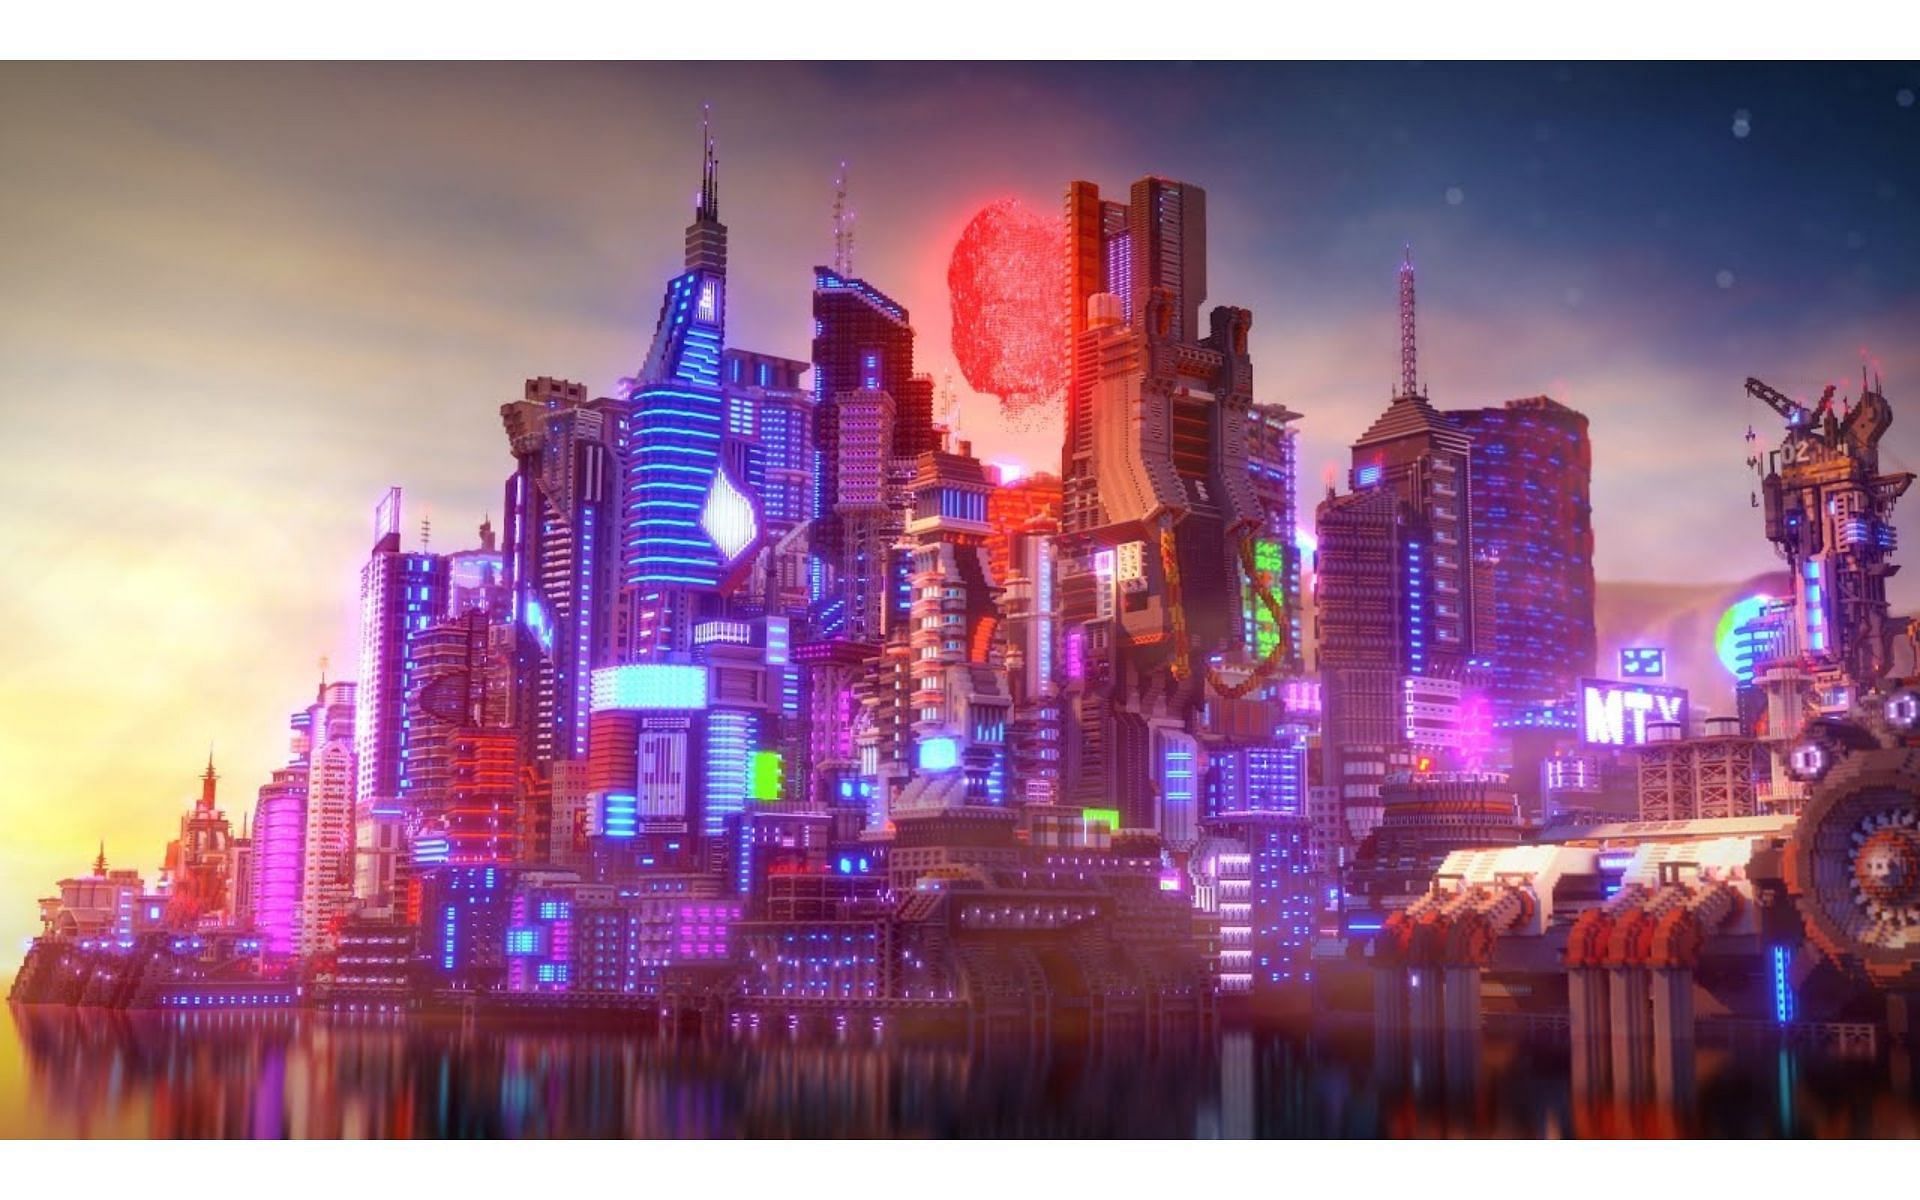 Строительство города в стиле киберпанк (Изображение взято с YouTube/Elysium Fire)